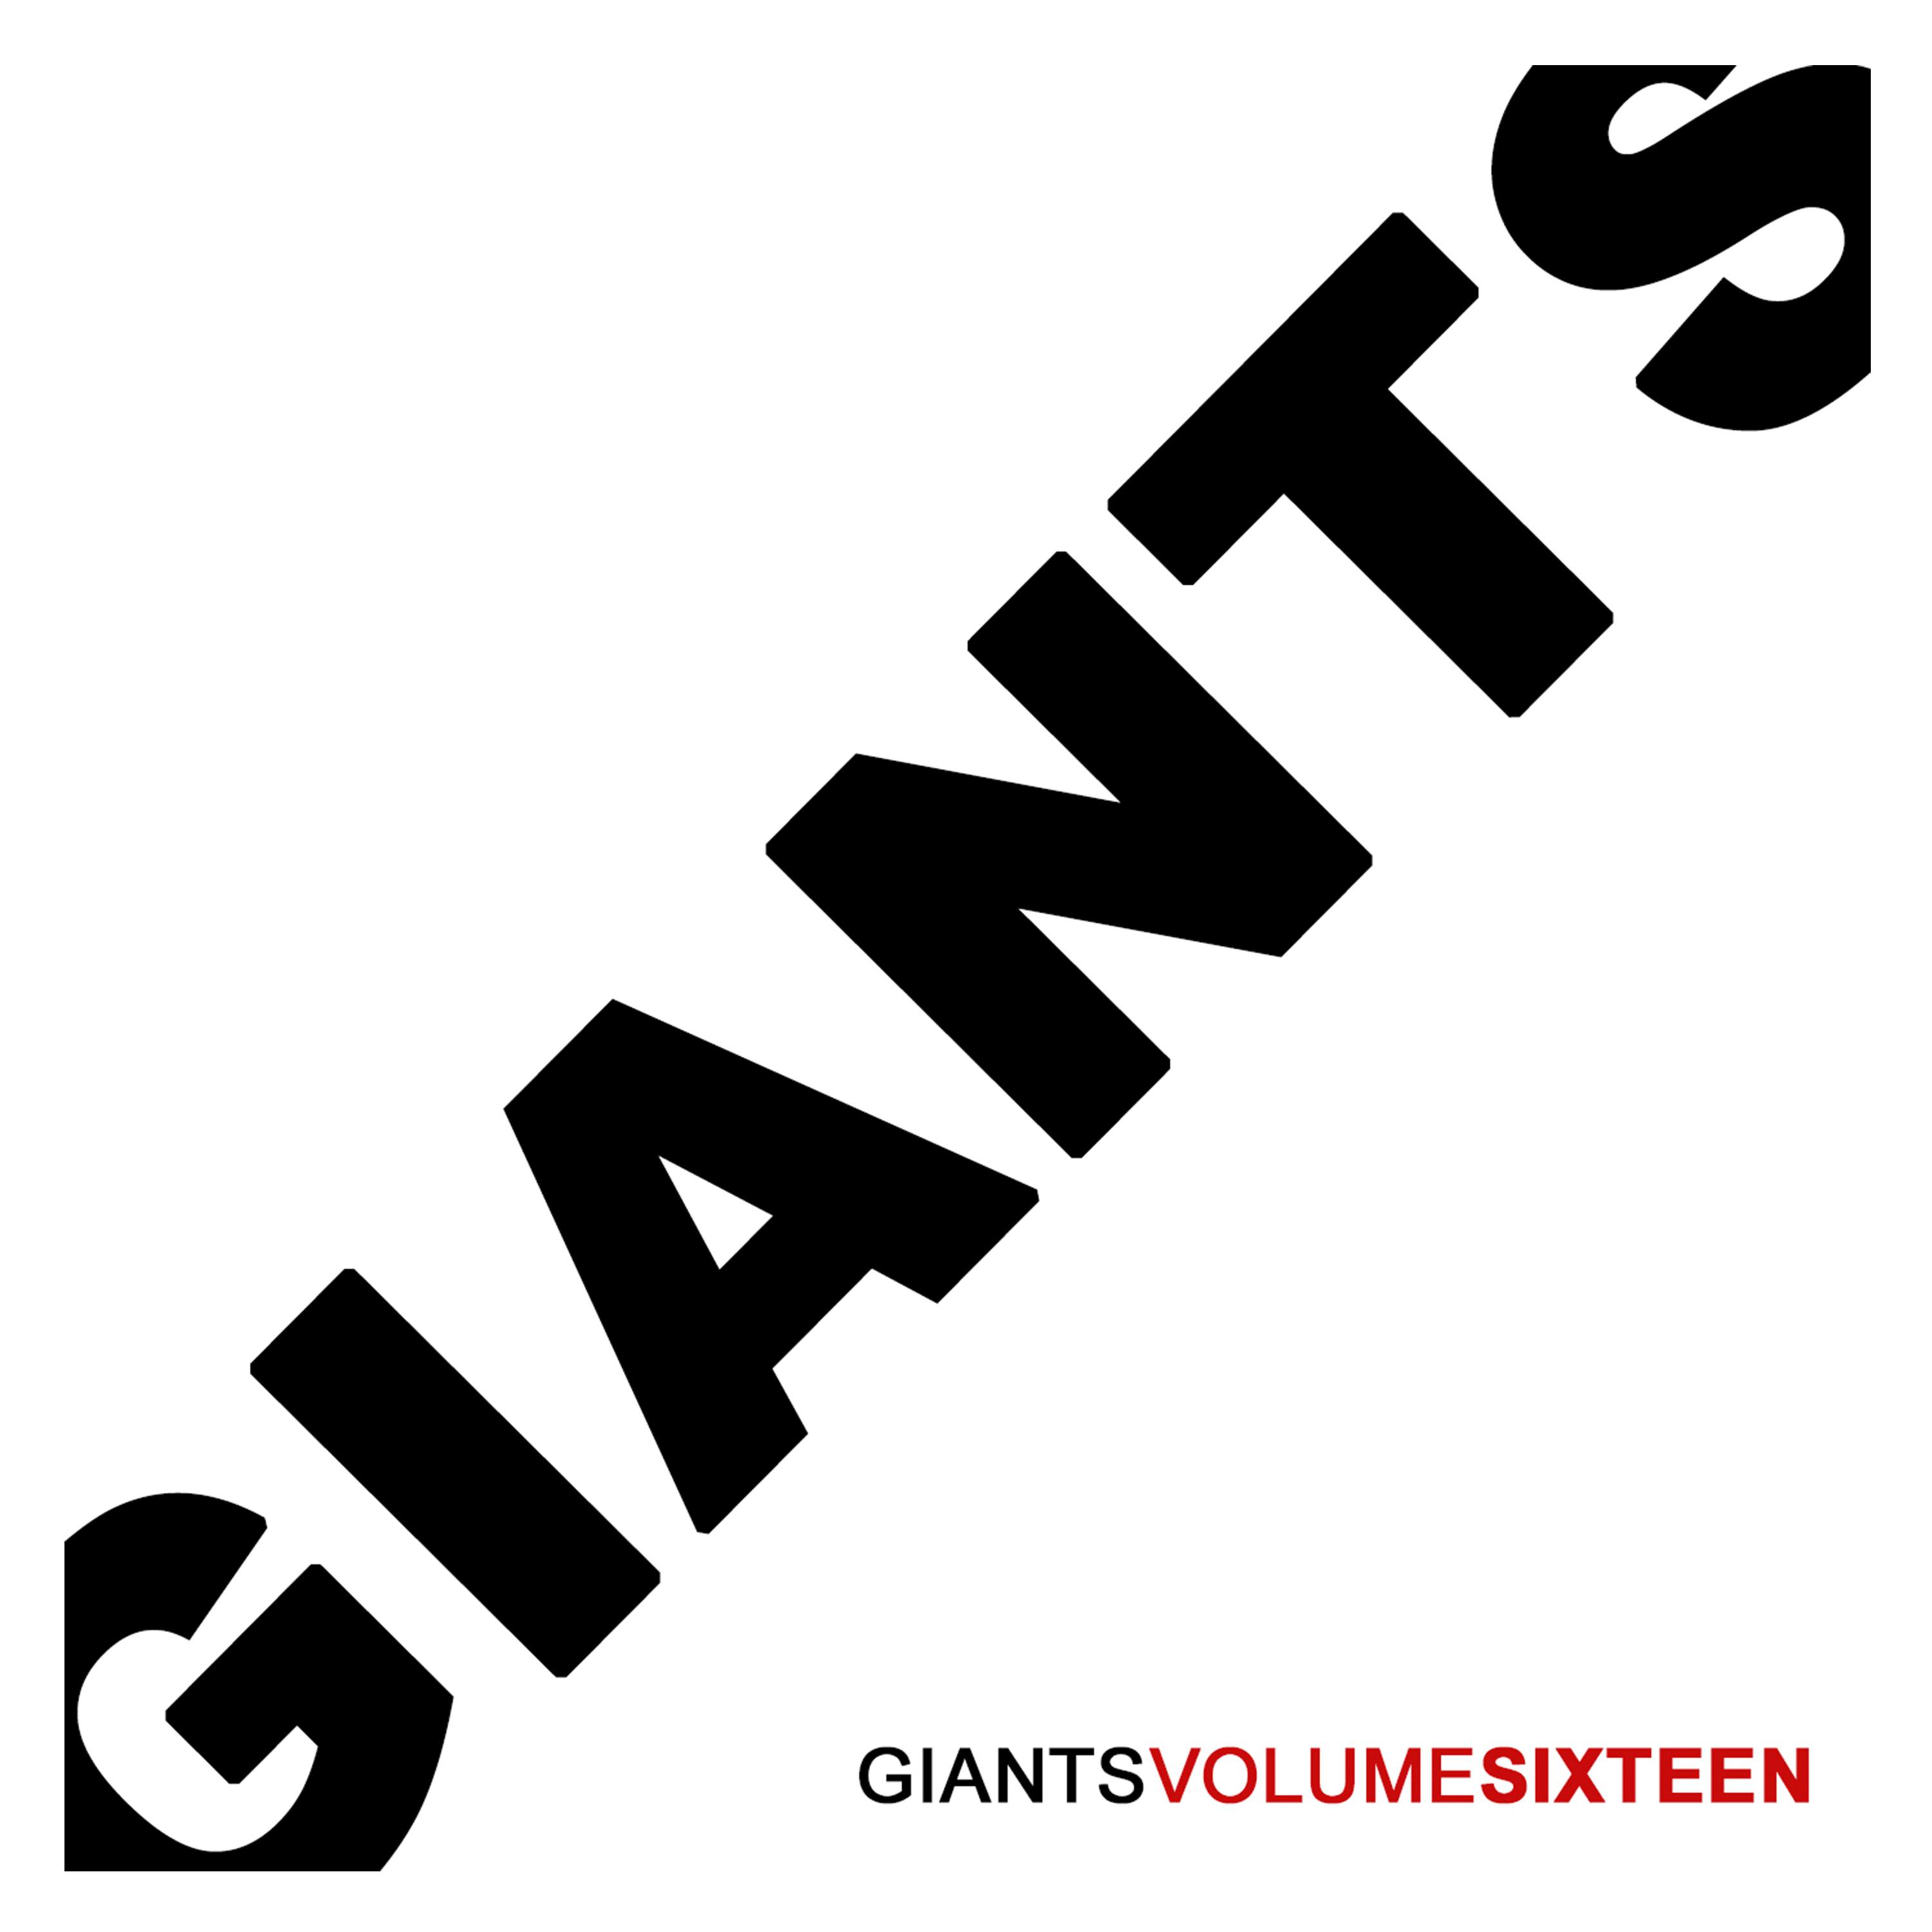 Giants, Vol. 16